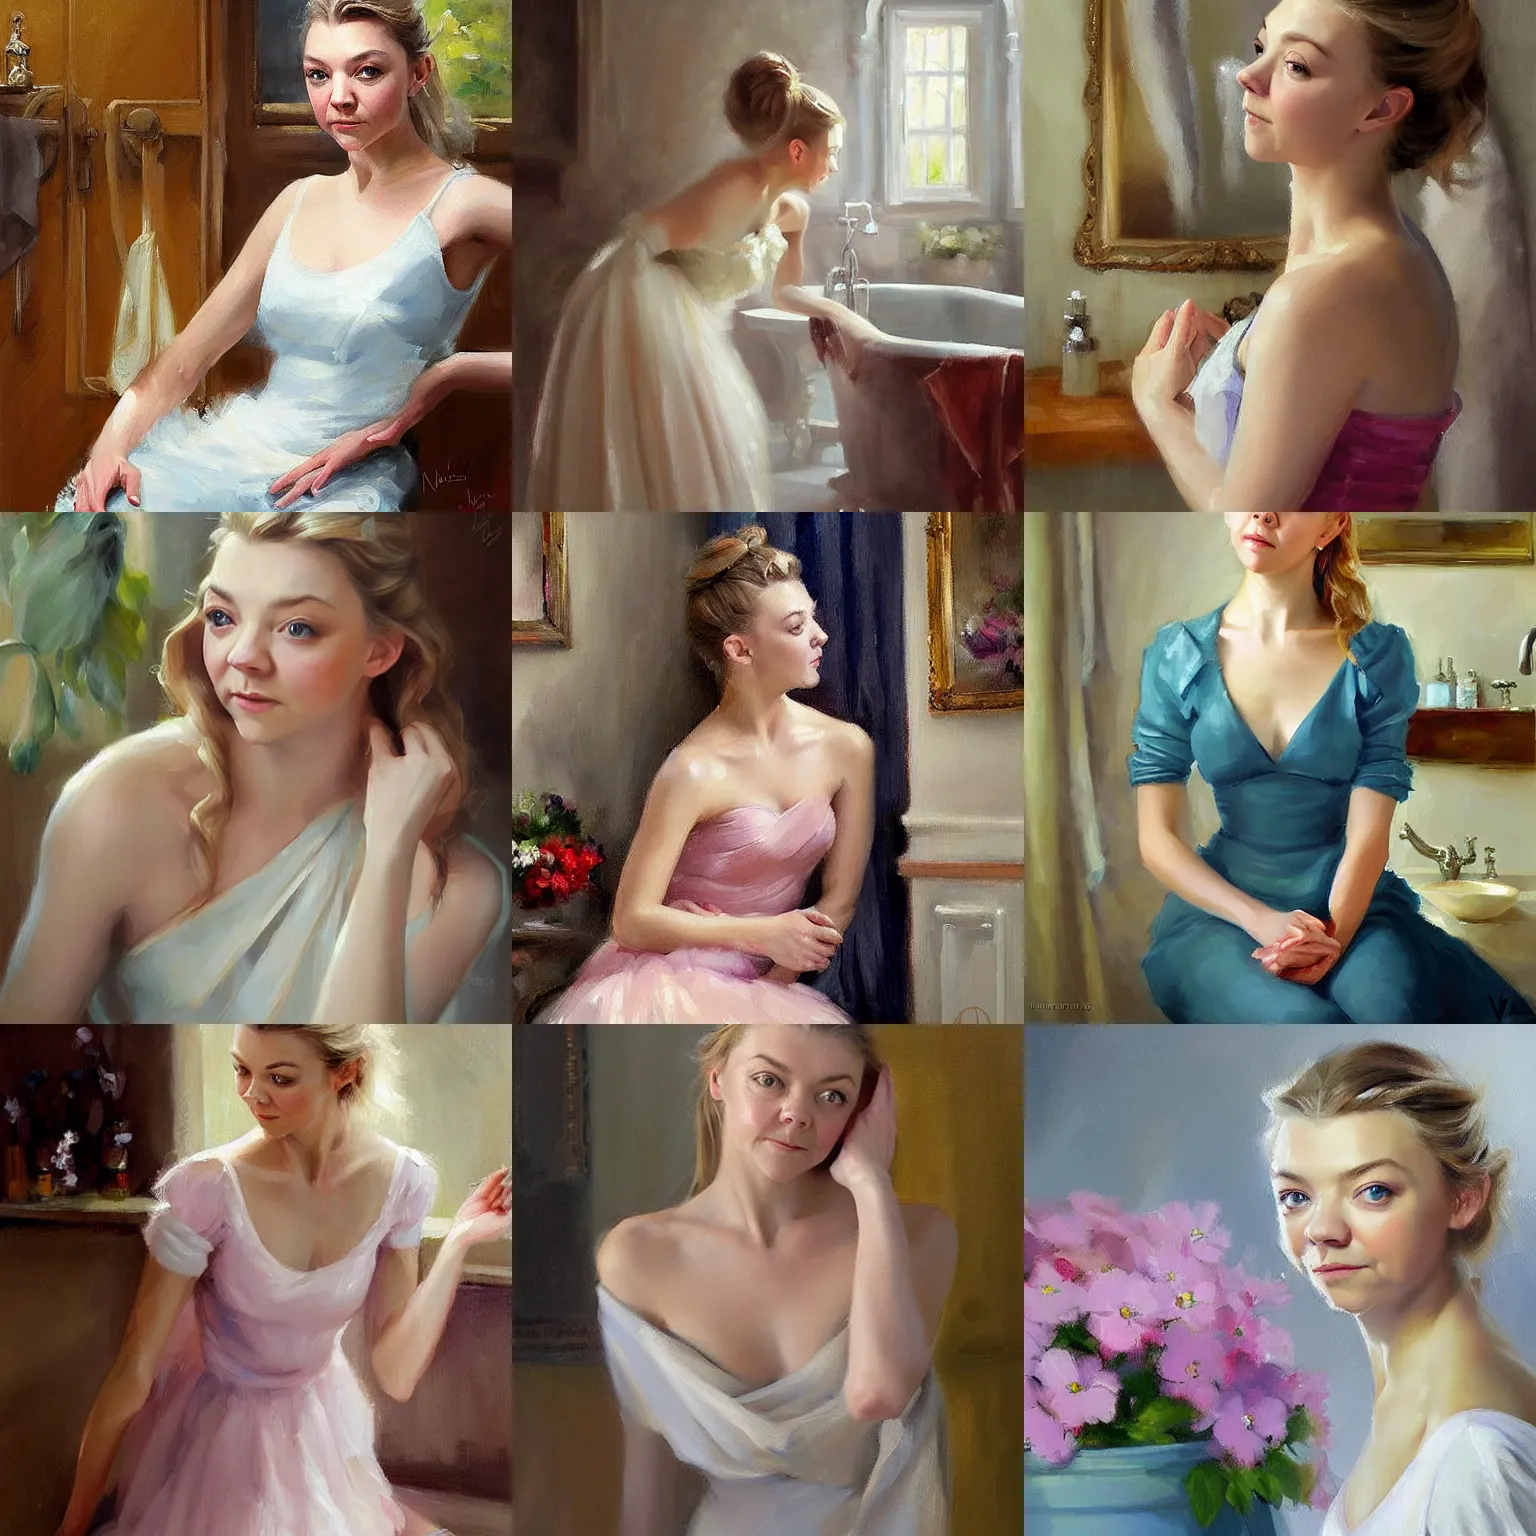 Prompt: Natalie Dormer blushing in the bathroom painting by Vladimir Volegov